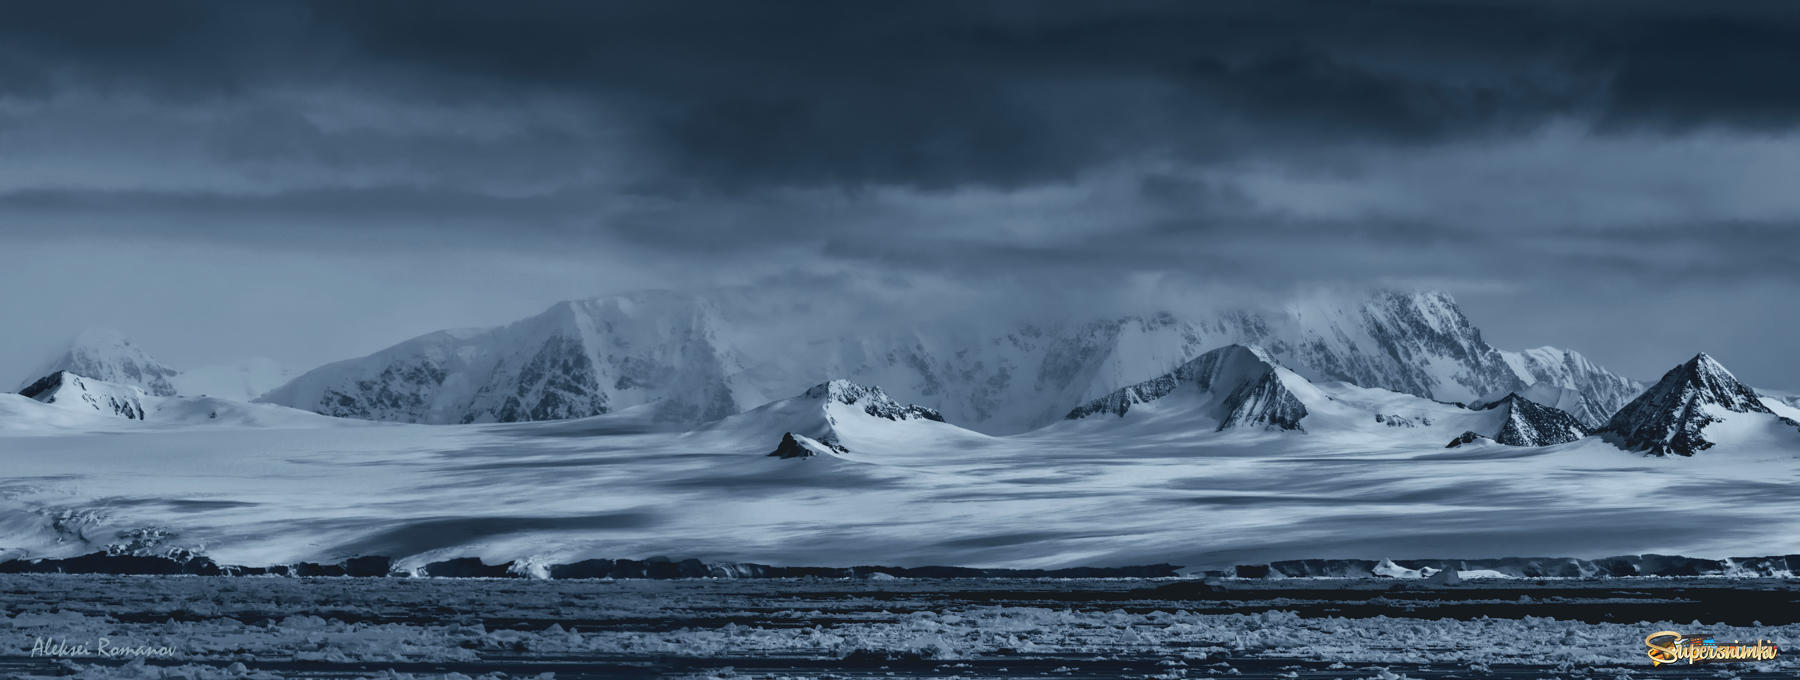 Антарктическое побережье